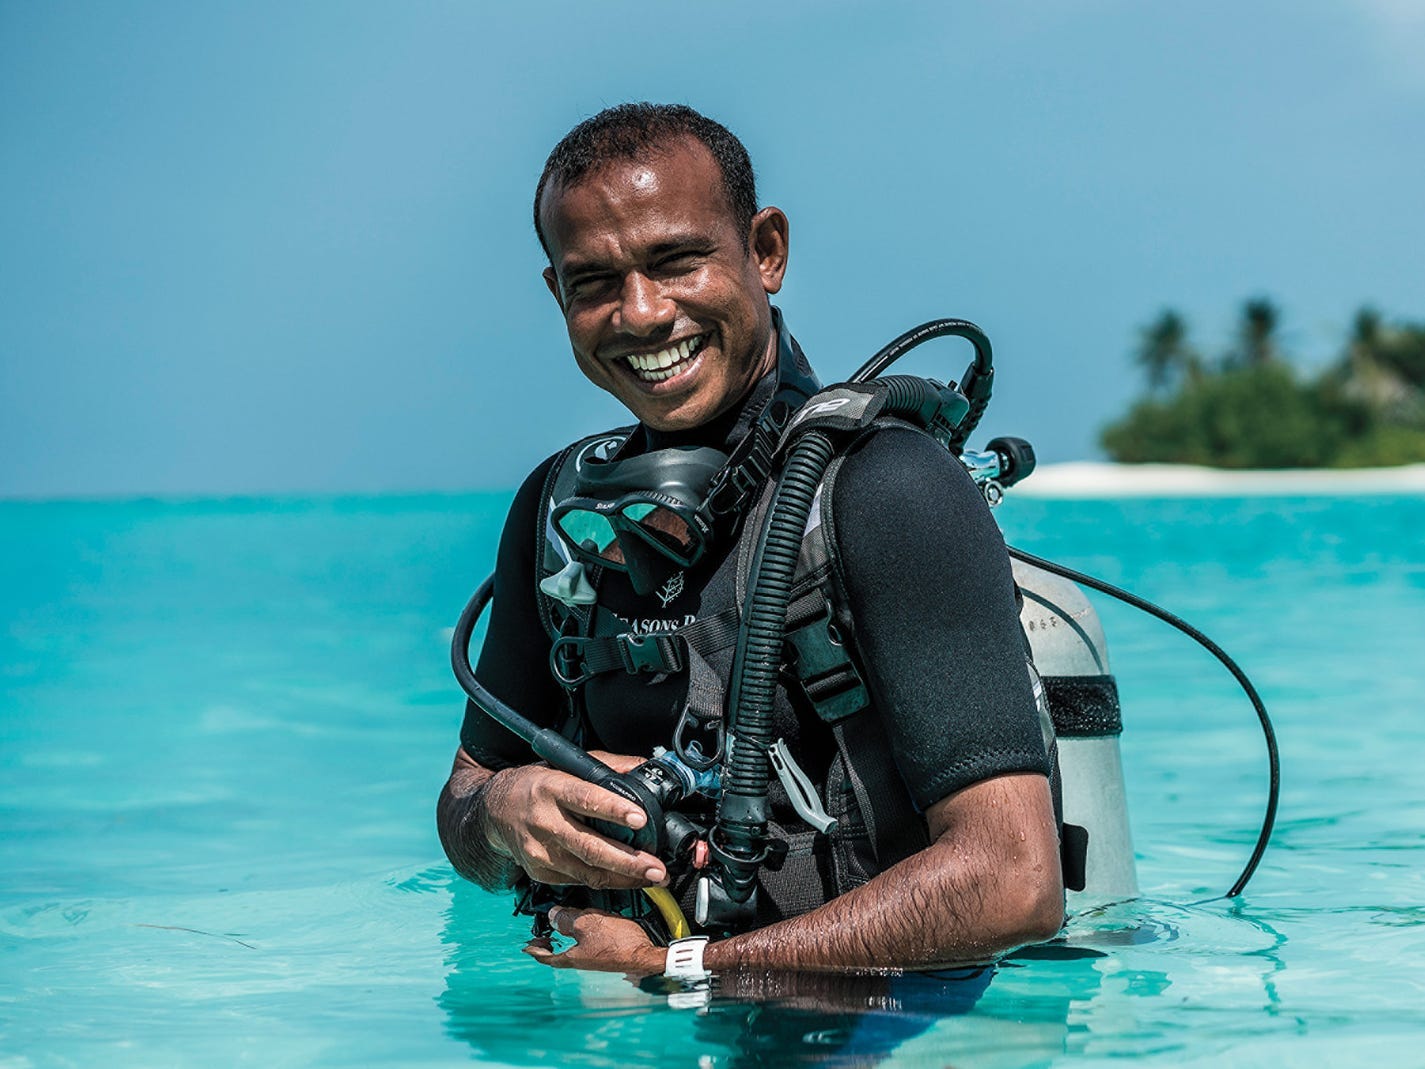 Ibrahim Nazeer, 43, is a scuba divemaster at the Four Seasons Resort Maldives at Kuda Huraa